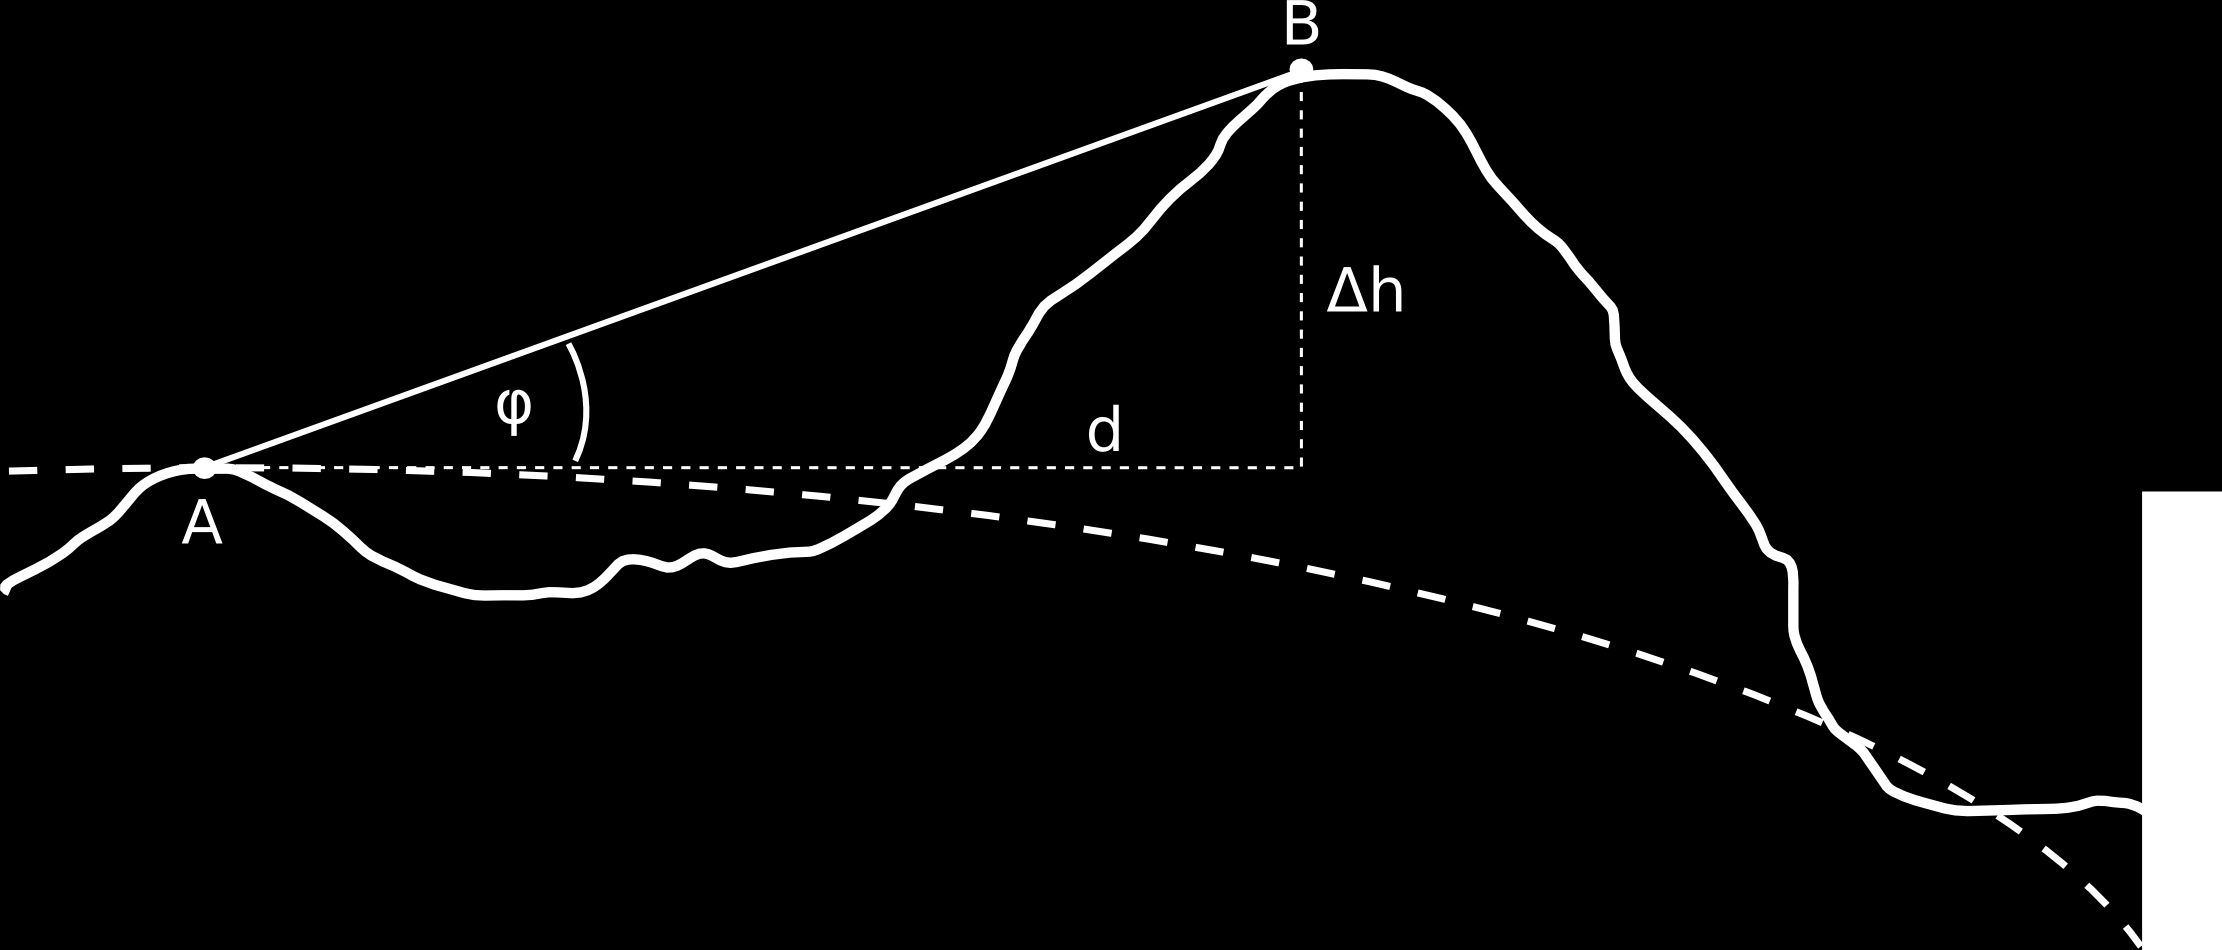 POGLAVLJE 2. NIVELMAN 61 Slika 2.38: Koncept trigonometrijskog nivelmana h = u tan ϕ gdje je u horizontalna udaljenost po elipsoidu.